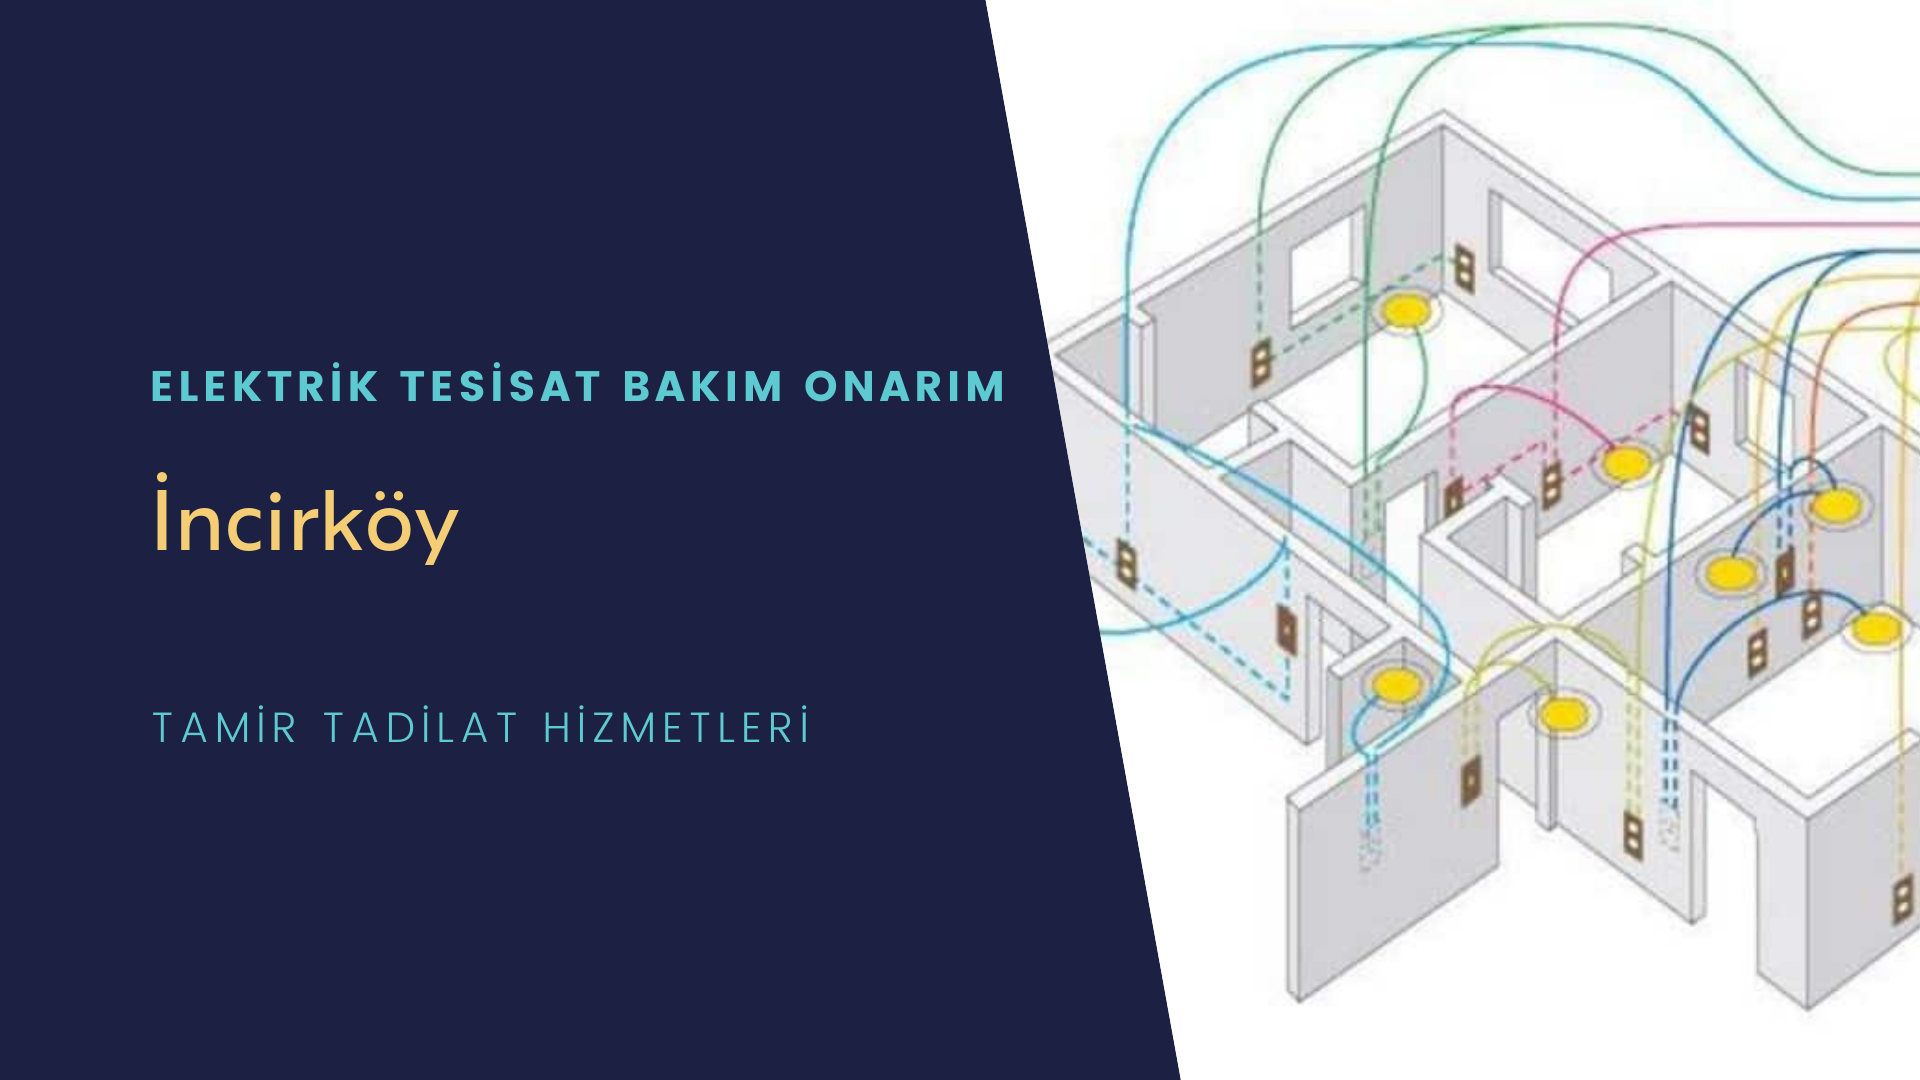 İncirköy'de elektrik tesisatı ustalarımı arıyorsunuz doğru adrestenizi İncirköy elektrik tesisatı ustalarımız 7/24 sizlere hizmet vermekten mutluluk duyar.